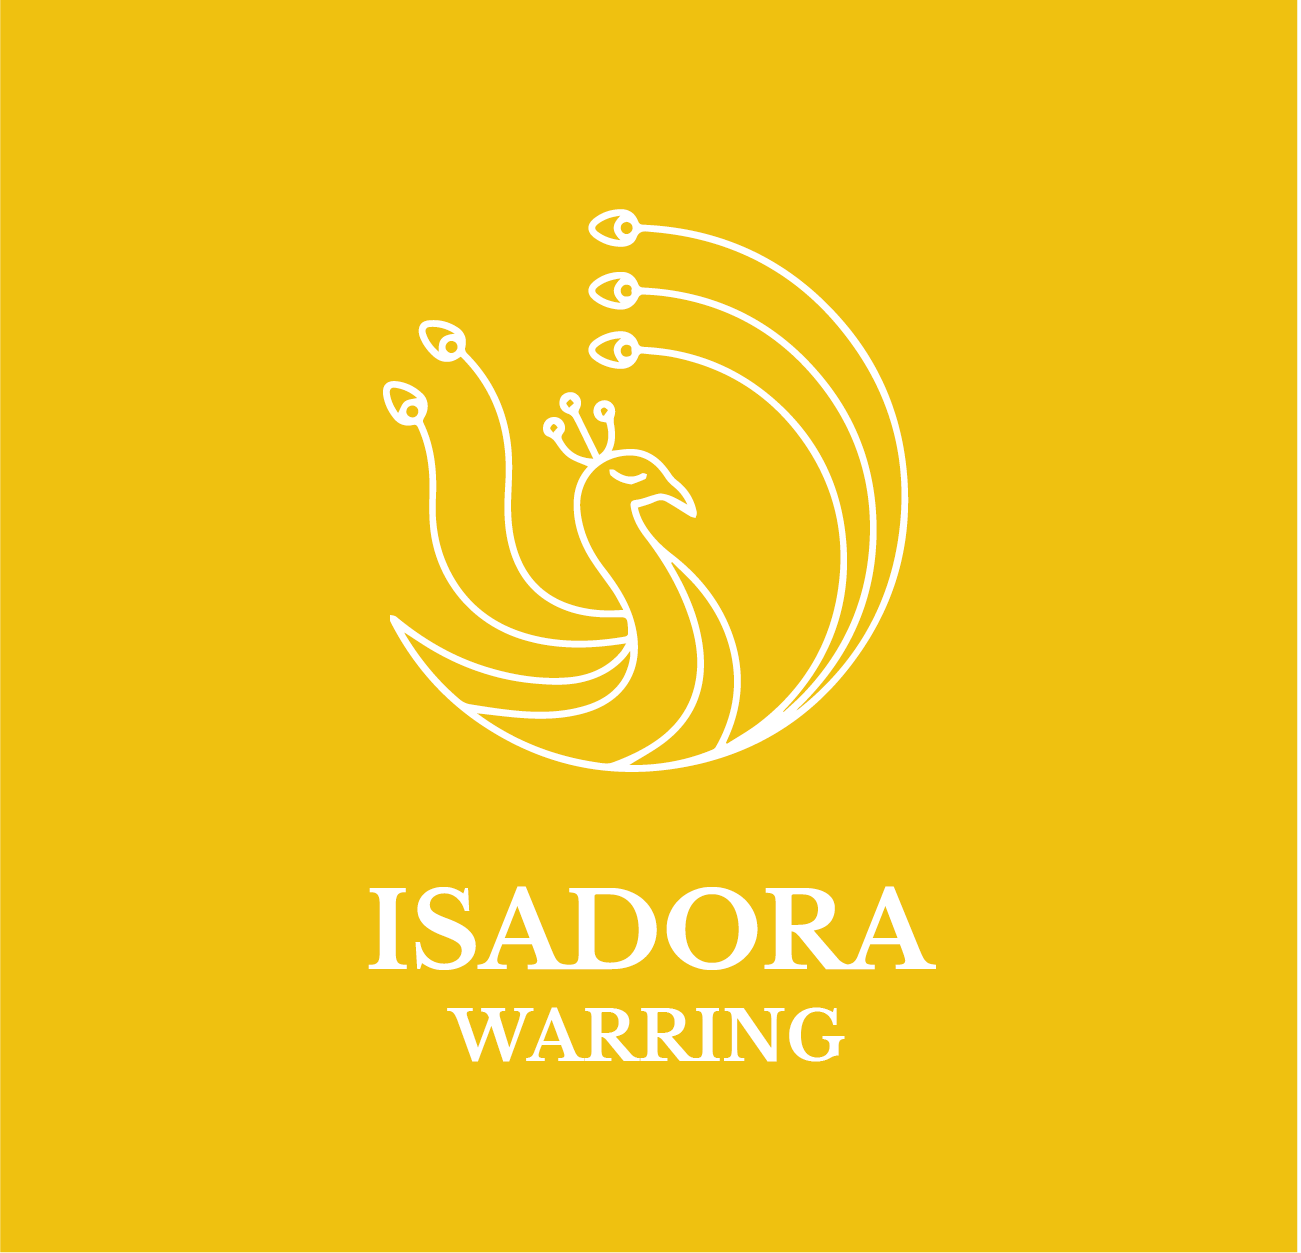 Isadora Warring